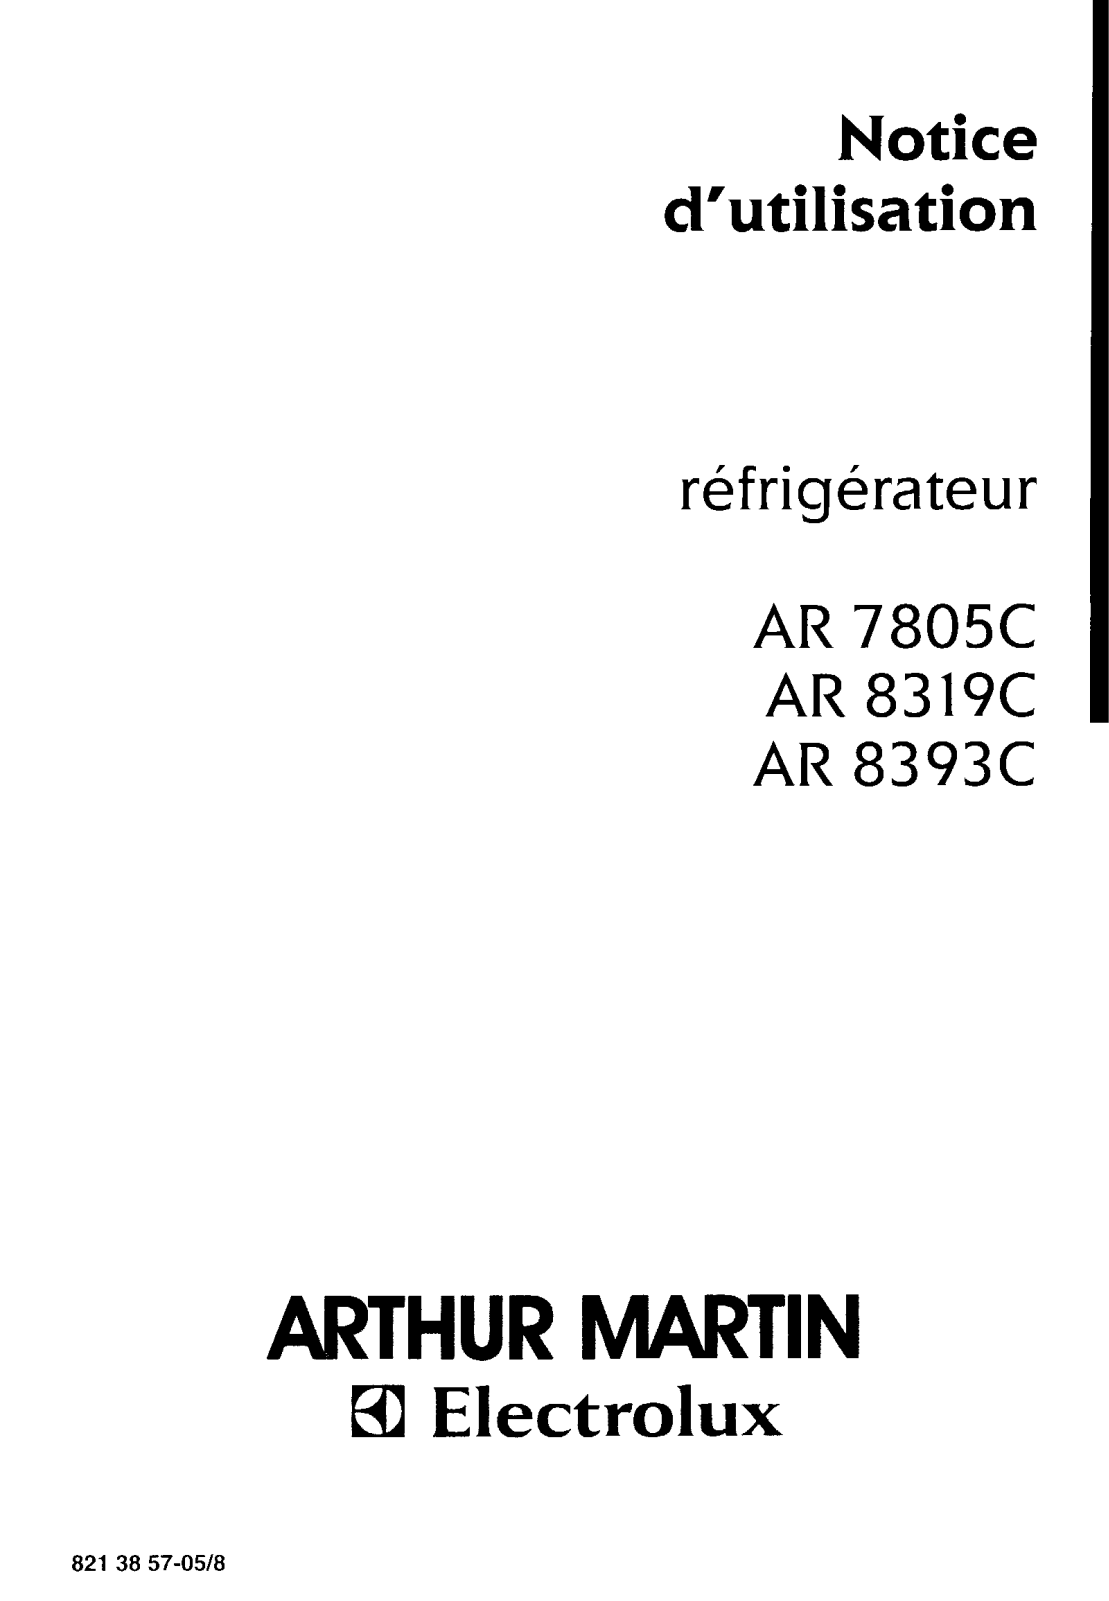 Arthur martin AR8393C, AR8319C, AR7805C User Manual